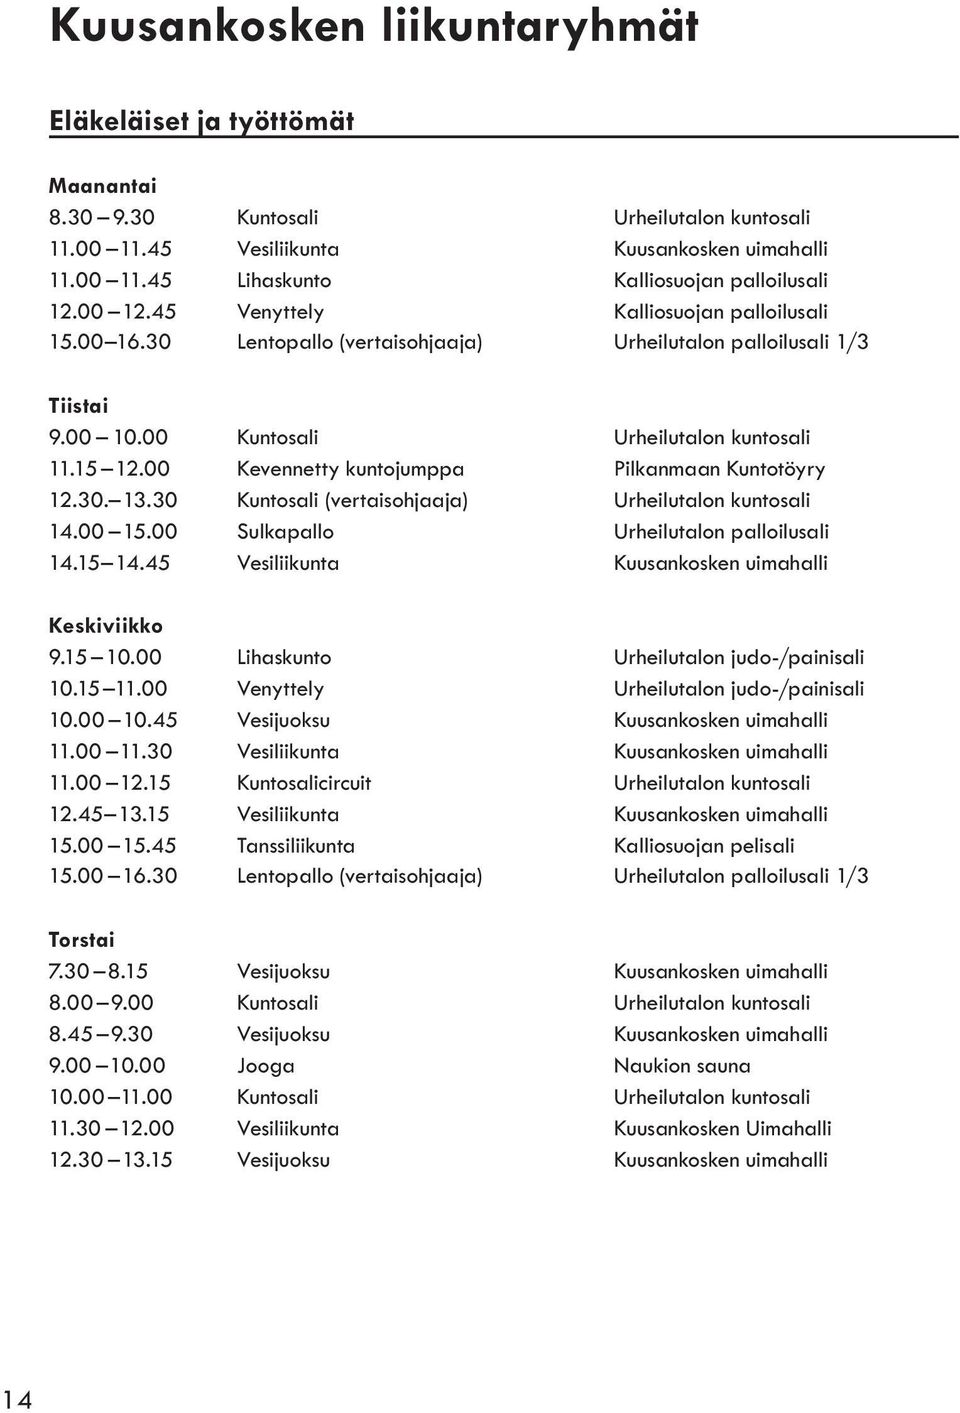 00 Kevennetty kuntojumppa Pilkanmaan Kuntotöyry 12.30. 13.30 Kuntosali (vertaisohjaaja) Urheilutalon kuntosali 14.00 15.00 Sulkapallo Urheilutalon palloilusali 14.15 14.